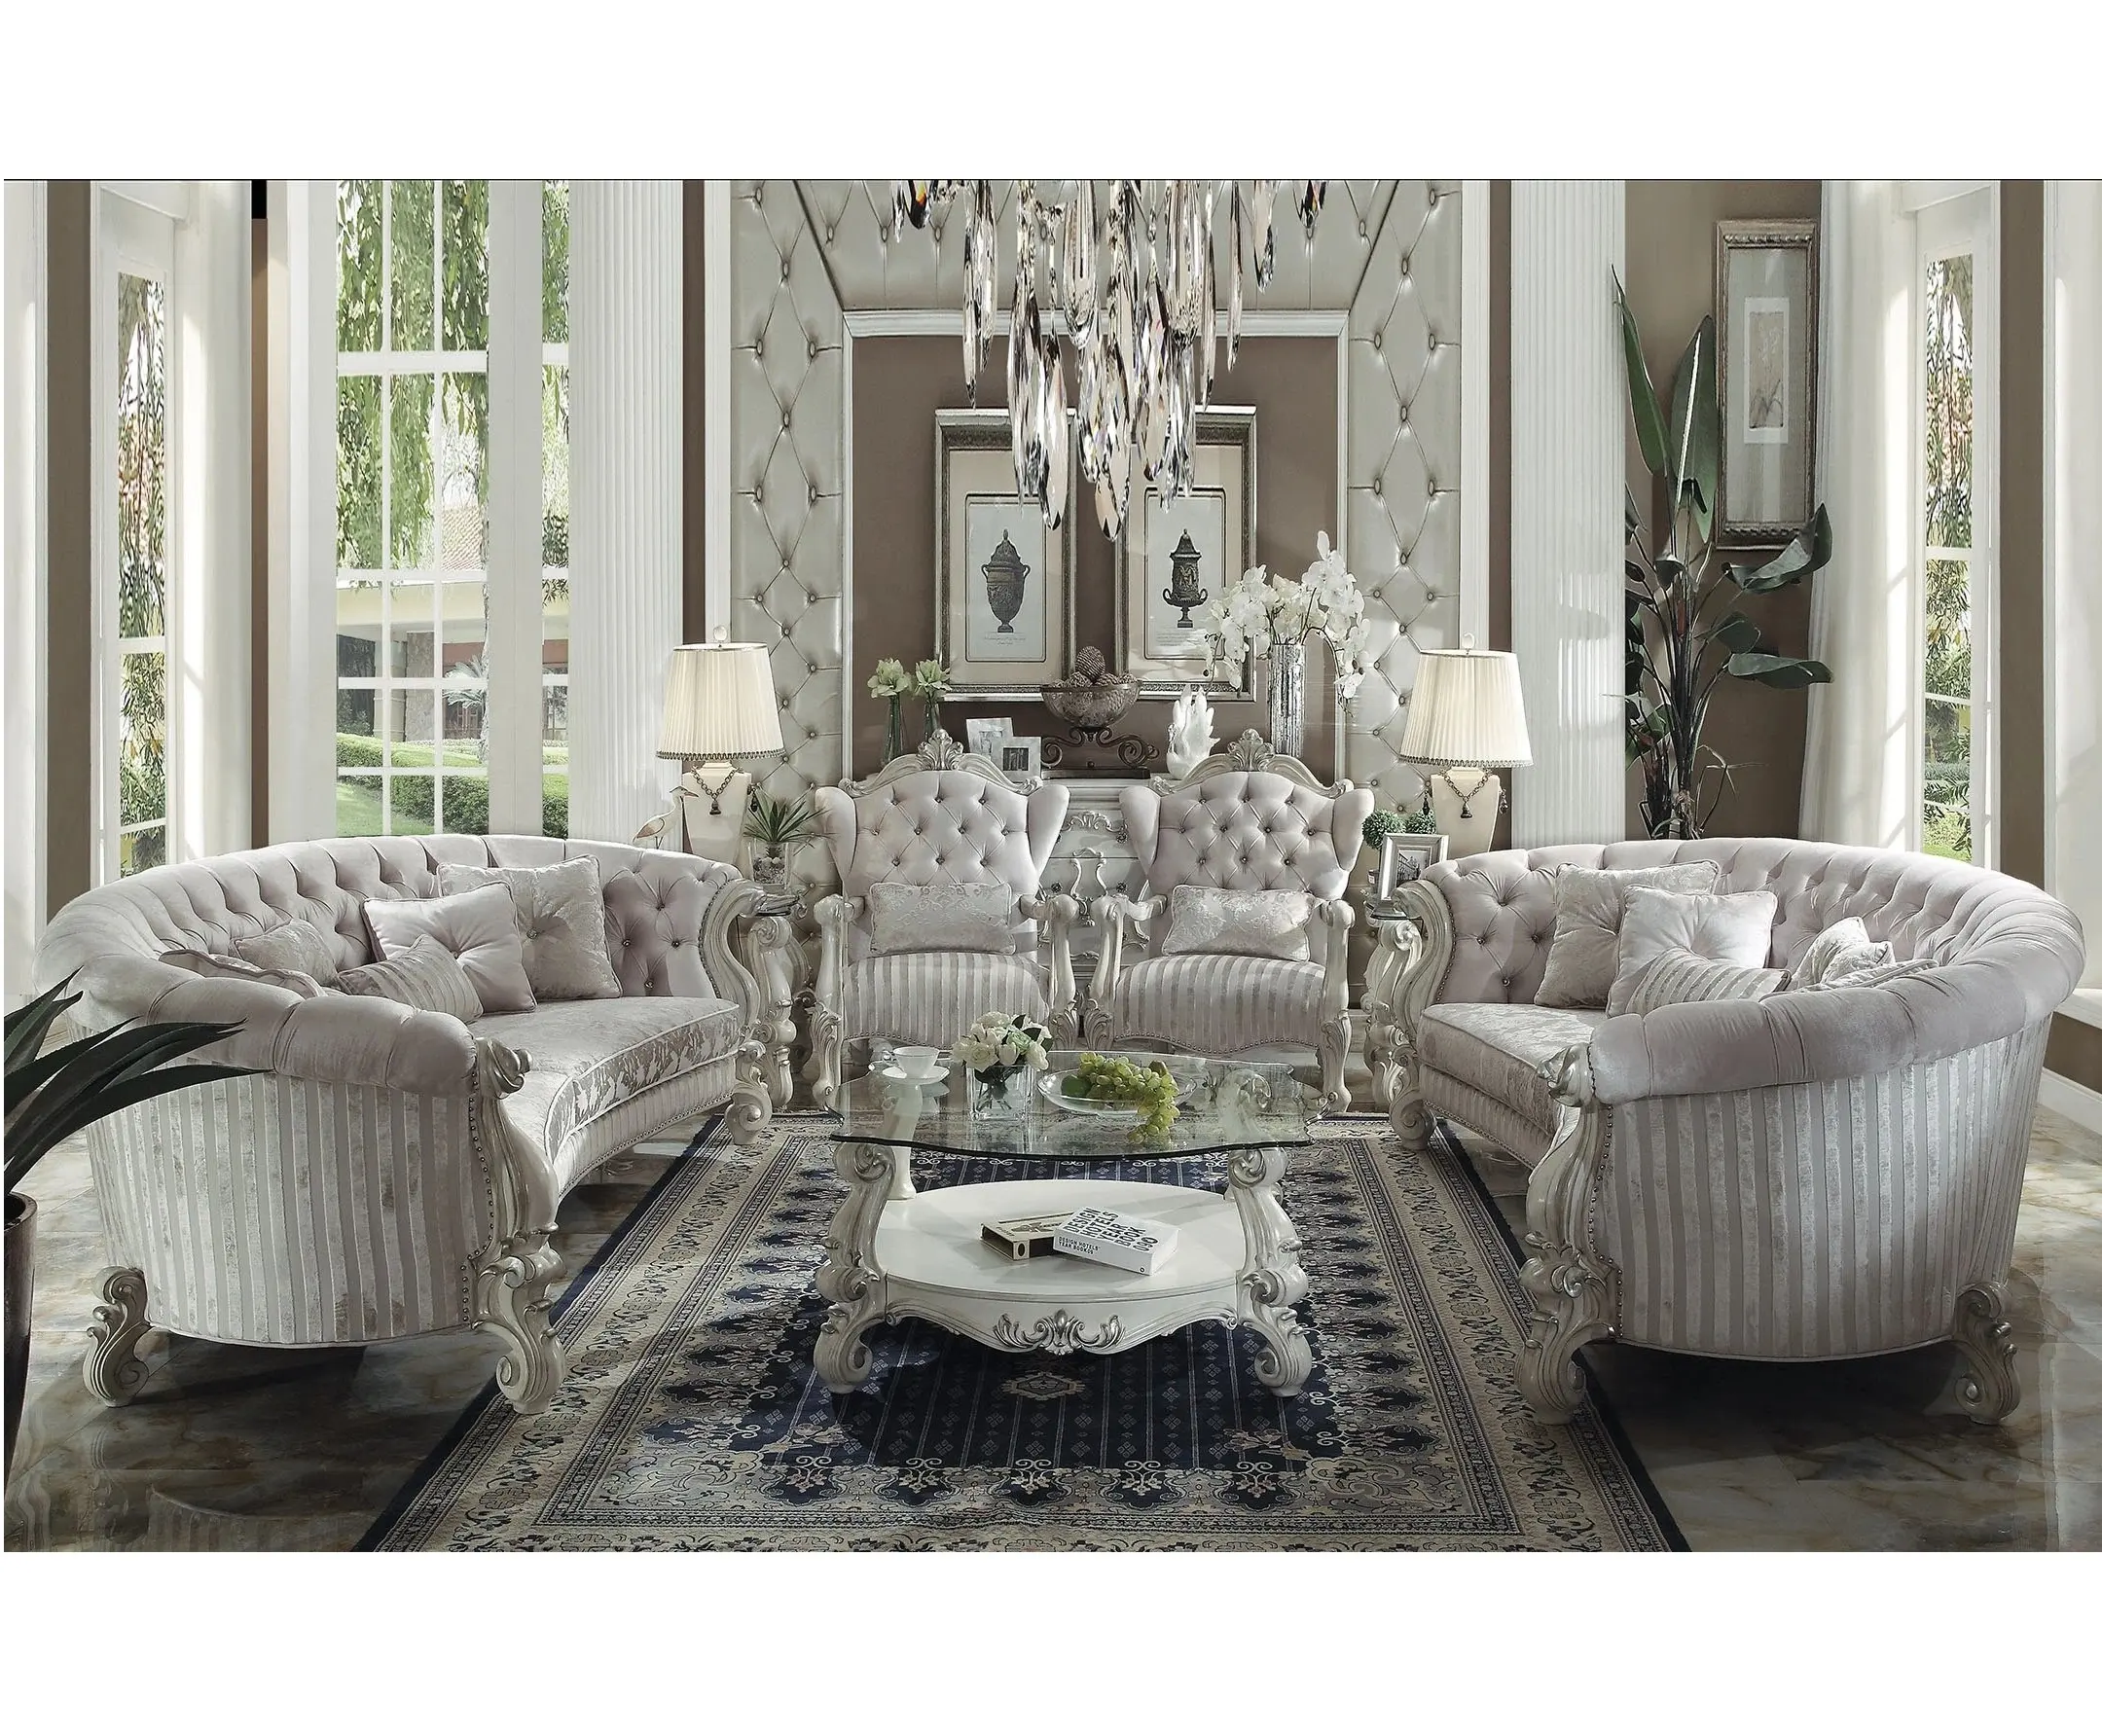 Versailles Elfenbein Samt Knochen Weiß Sofa Set, Die Versailles Elfenbein Samt Wohnzimmer Sammlung